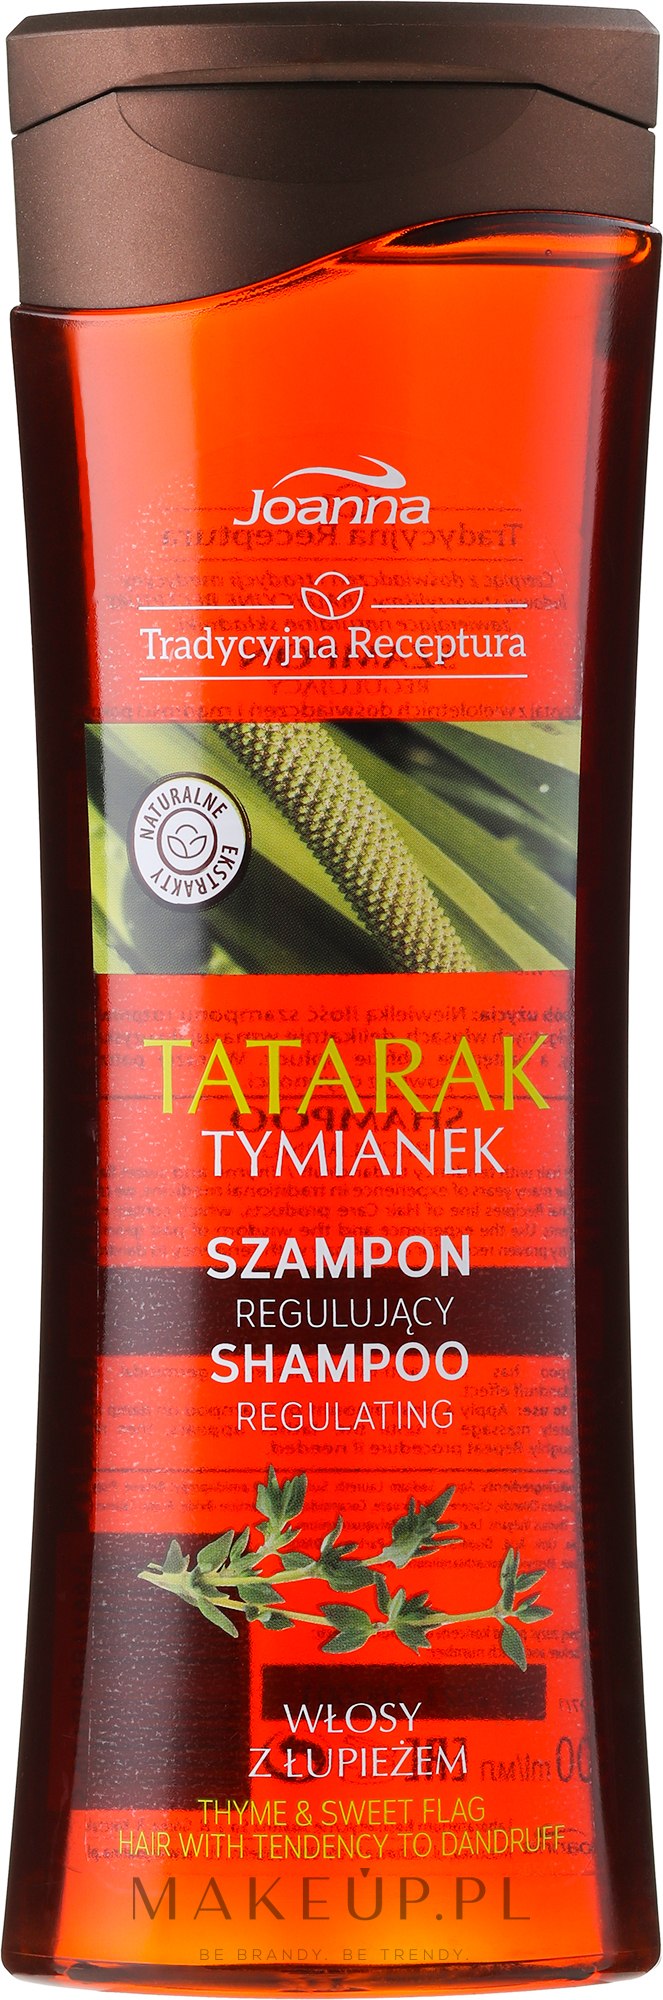 joanna tradycyjna receptura szampon do włosów tatarak i tymianek